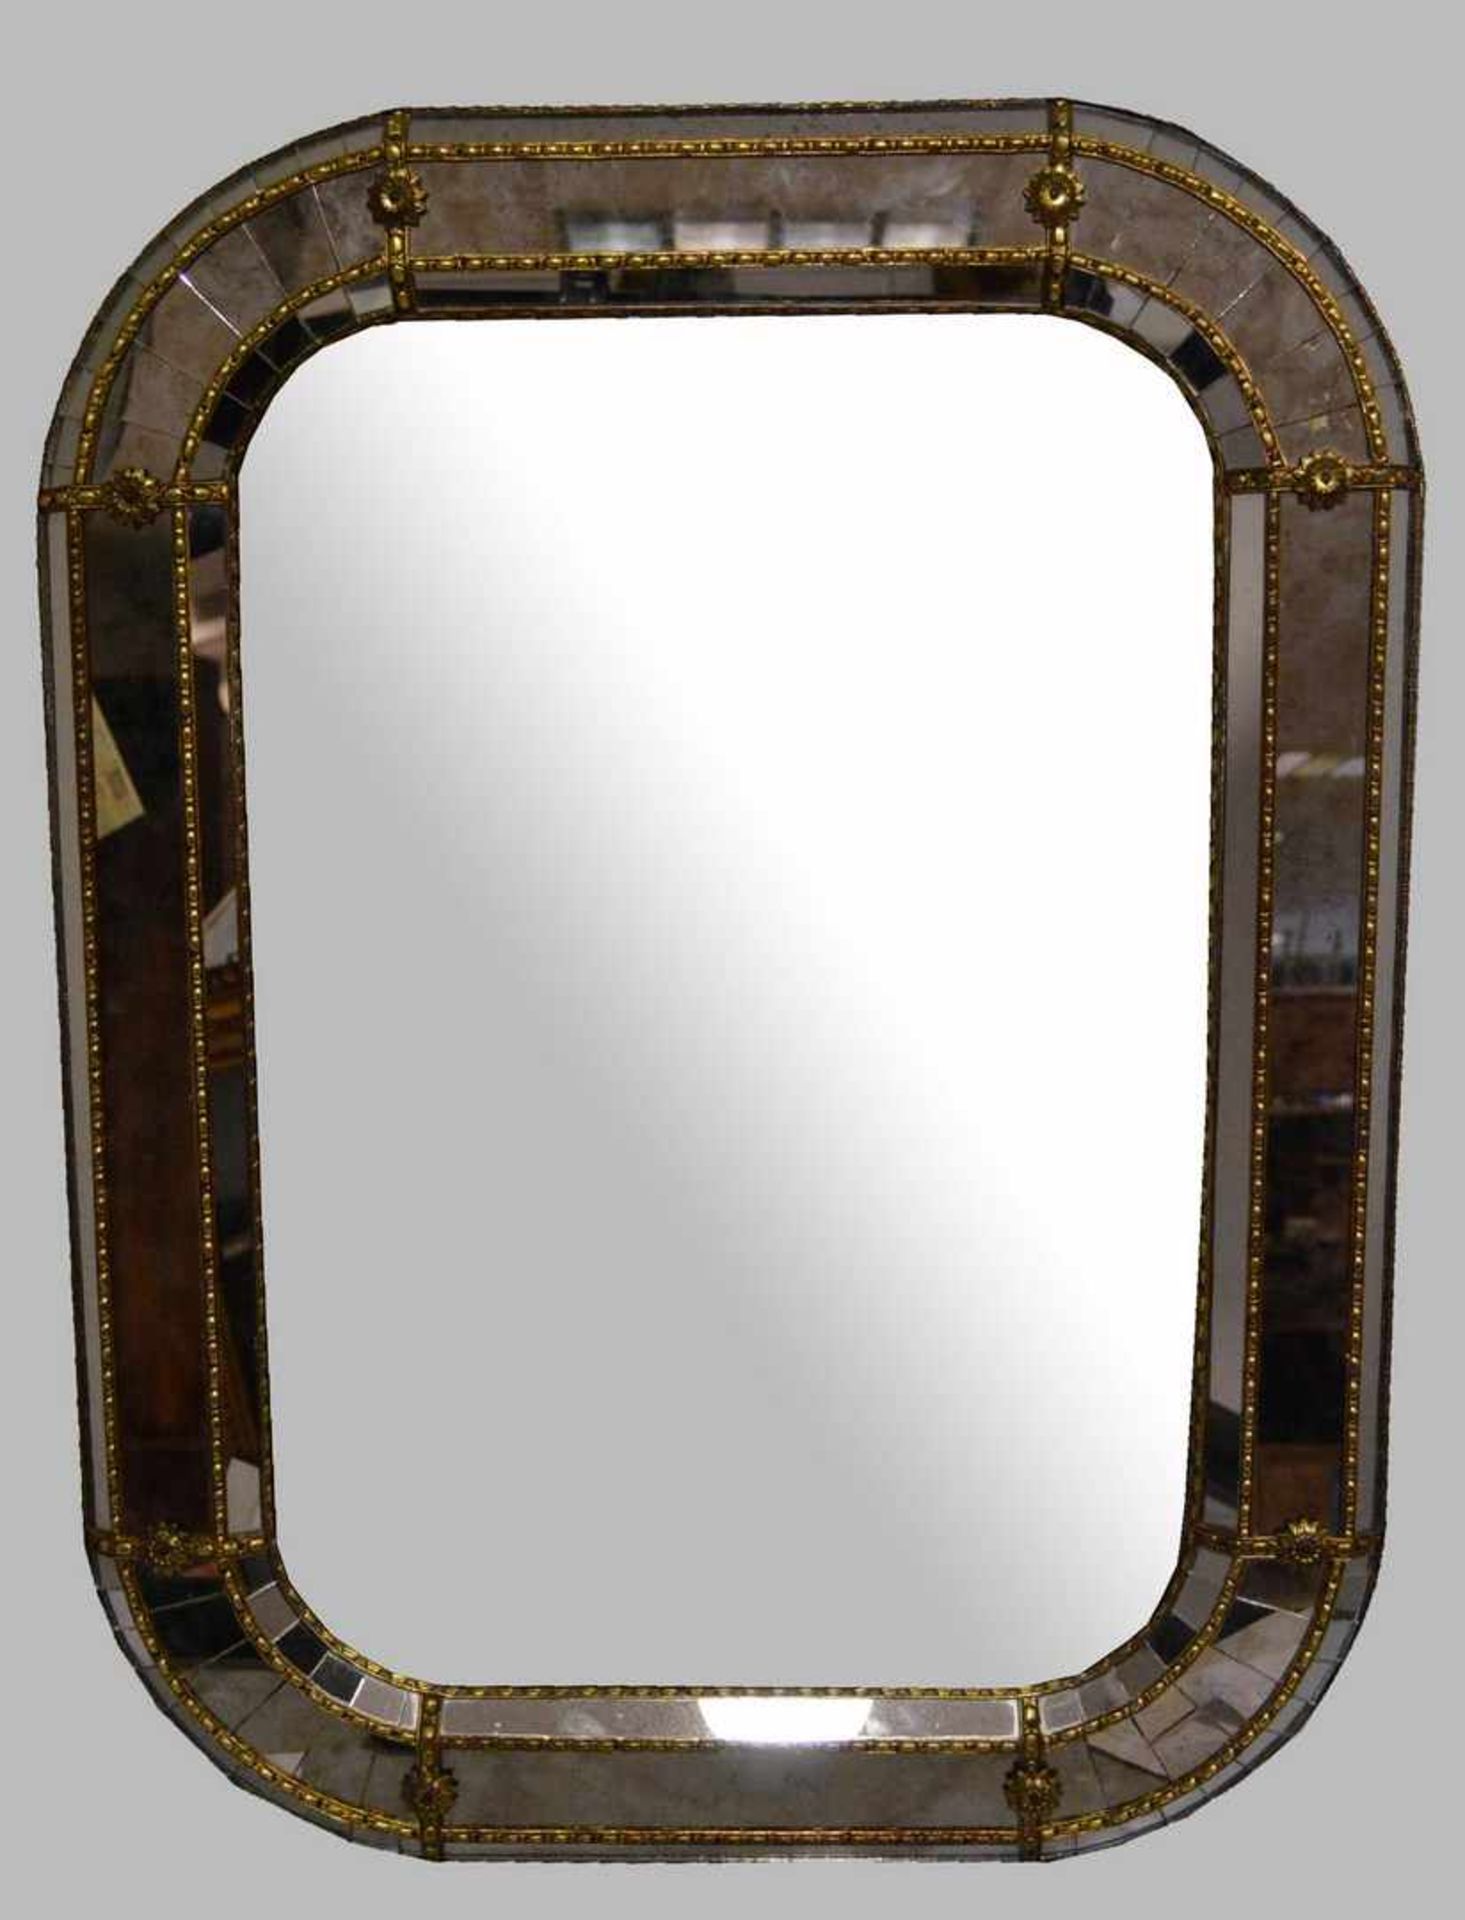 Spiegel rechteckiges Hochformat, breiter gold verzierter Rand, H 80 cm, B 60 cm